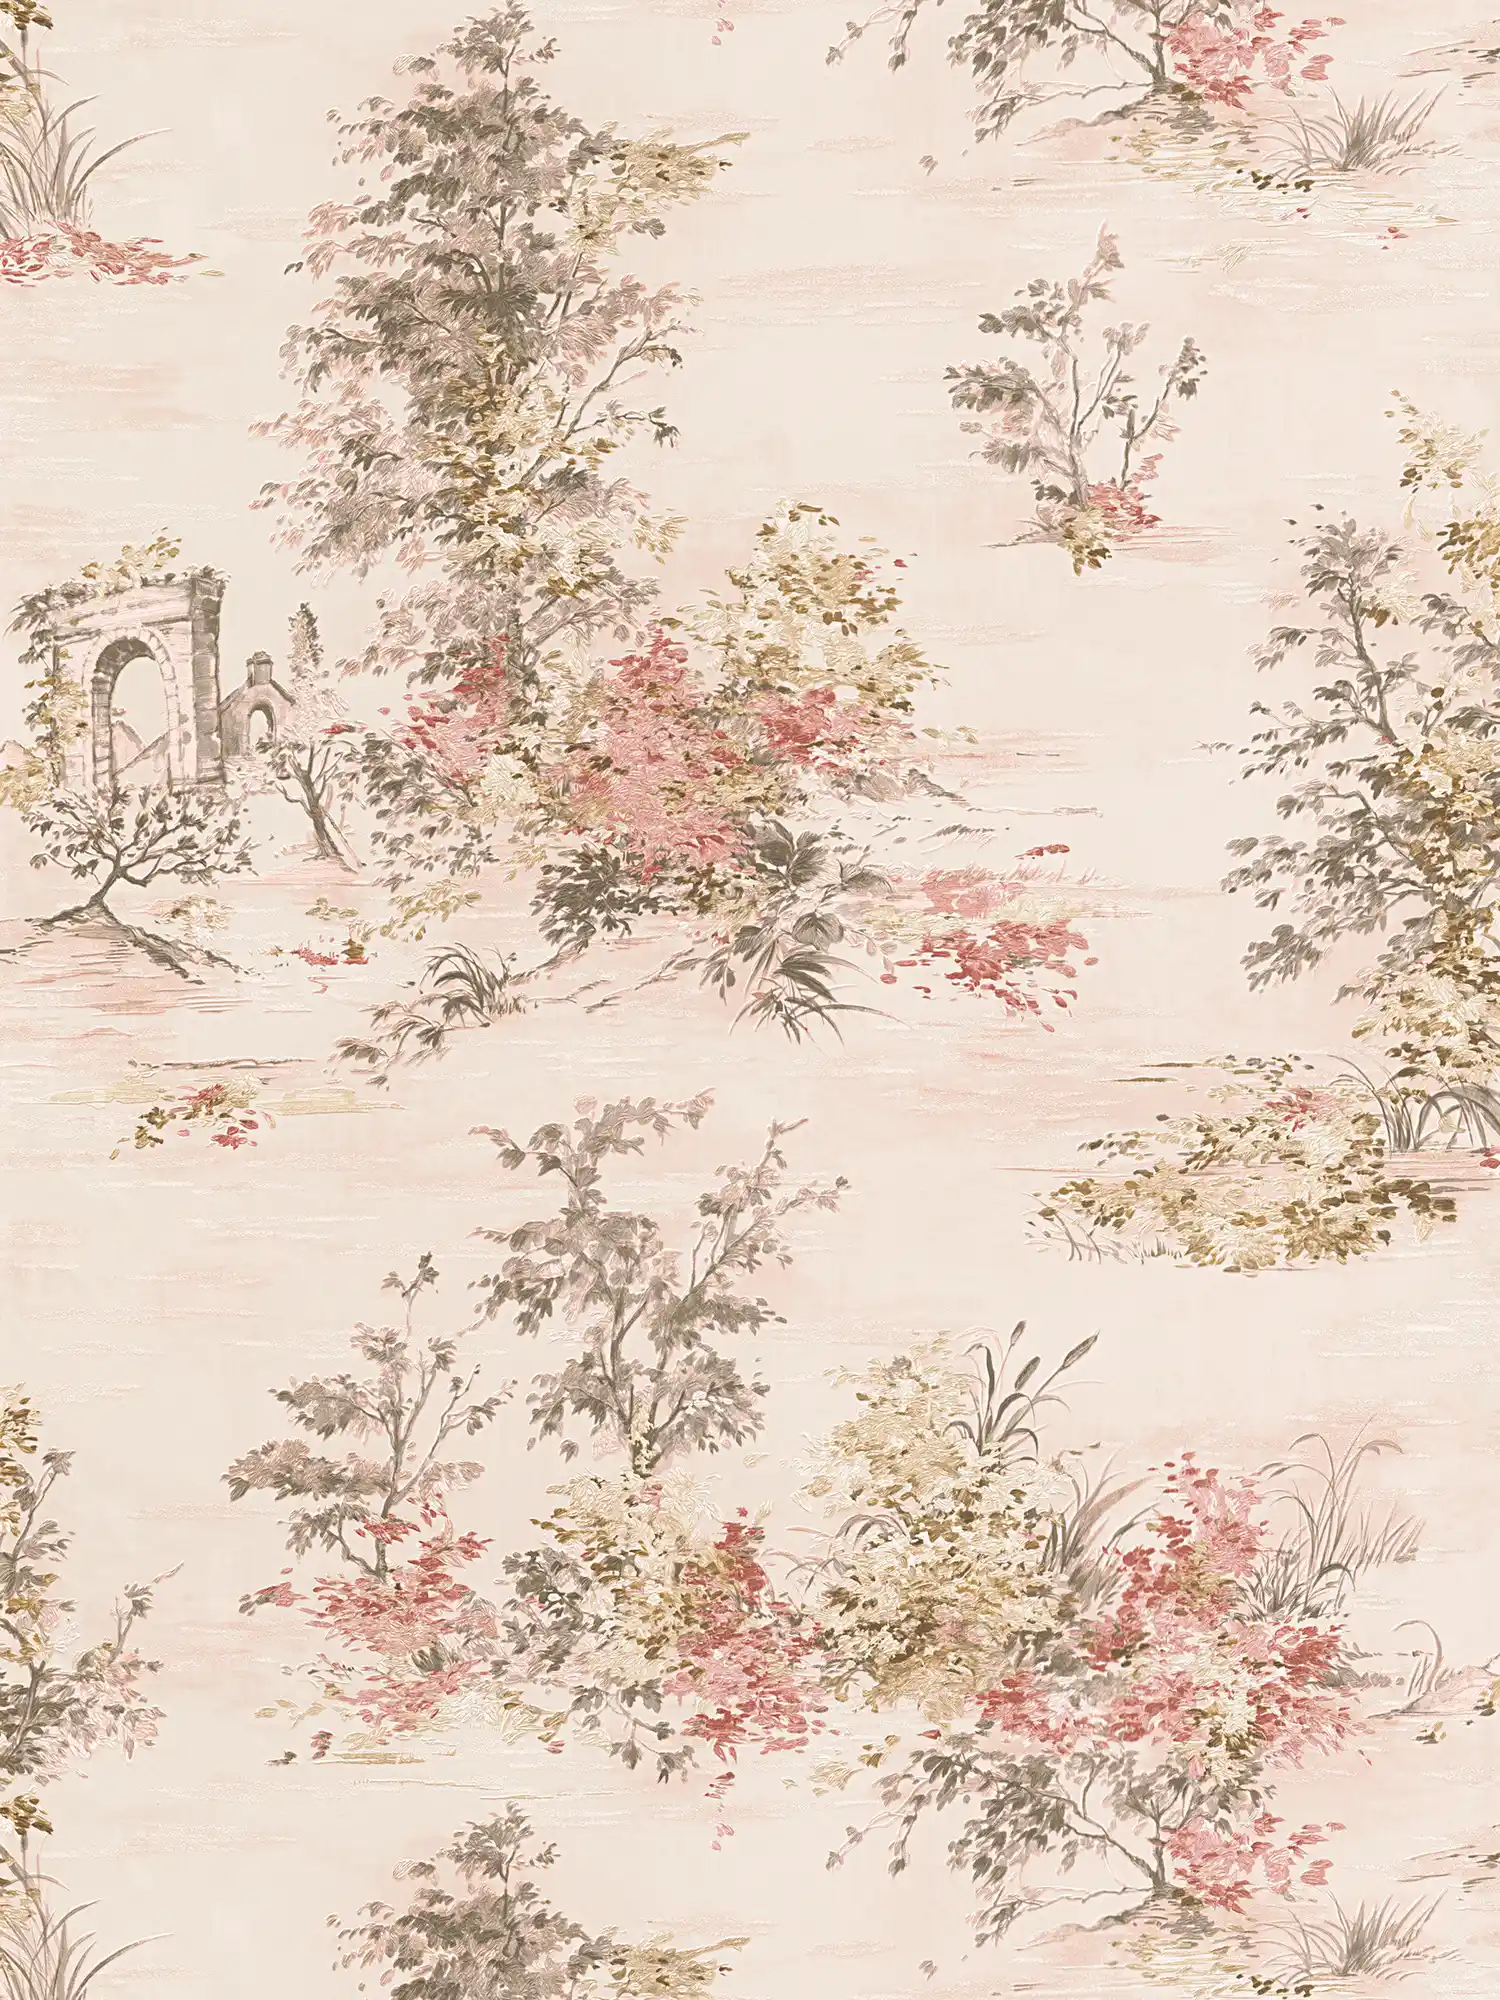 Behang met landschapsmotief in klassieke stijl - rood, roze, grijs, crème
